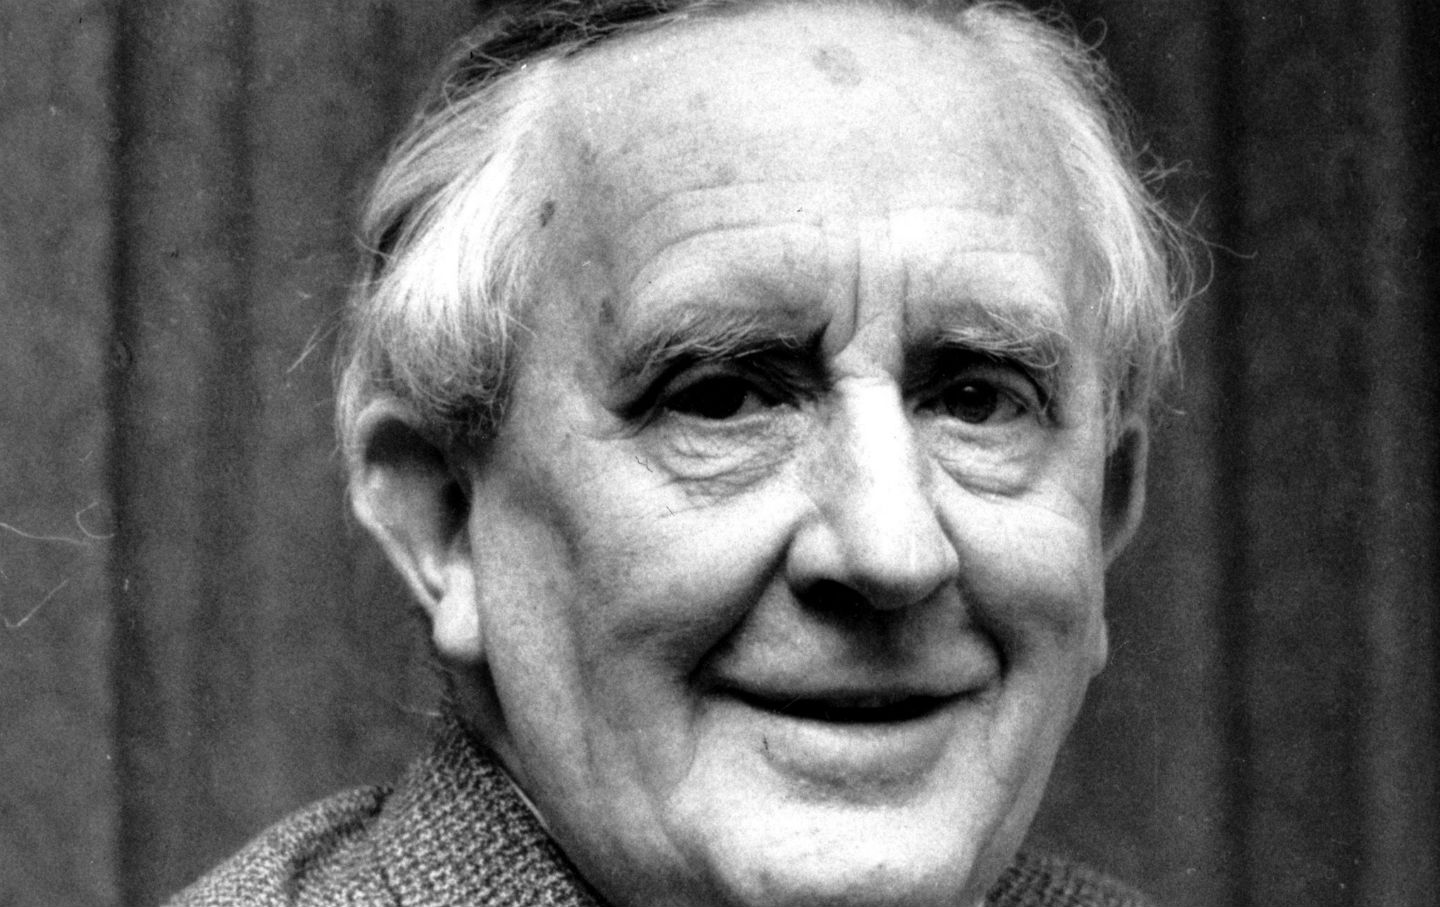 September 2, 1973: J.R.R. Tolkien Dies